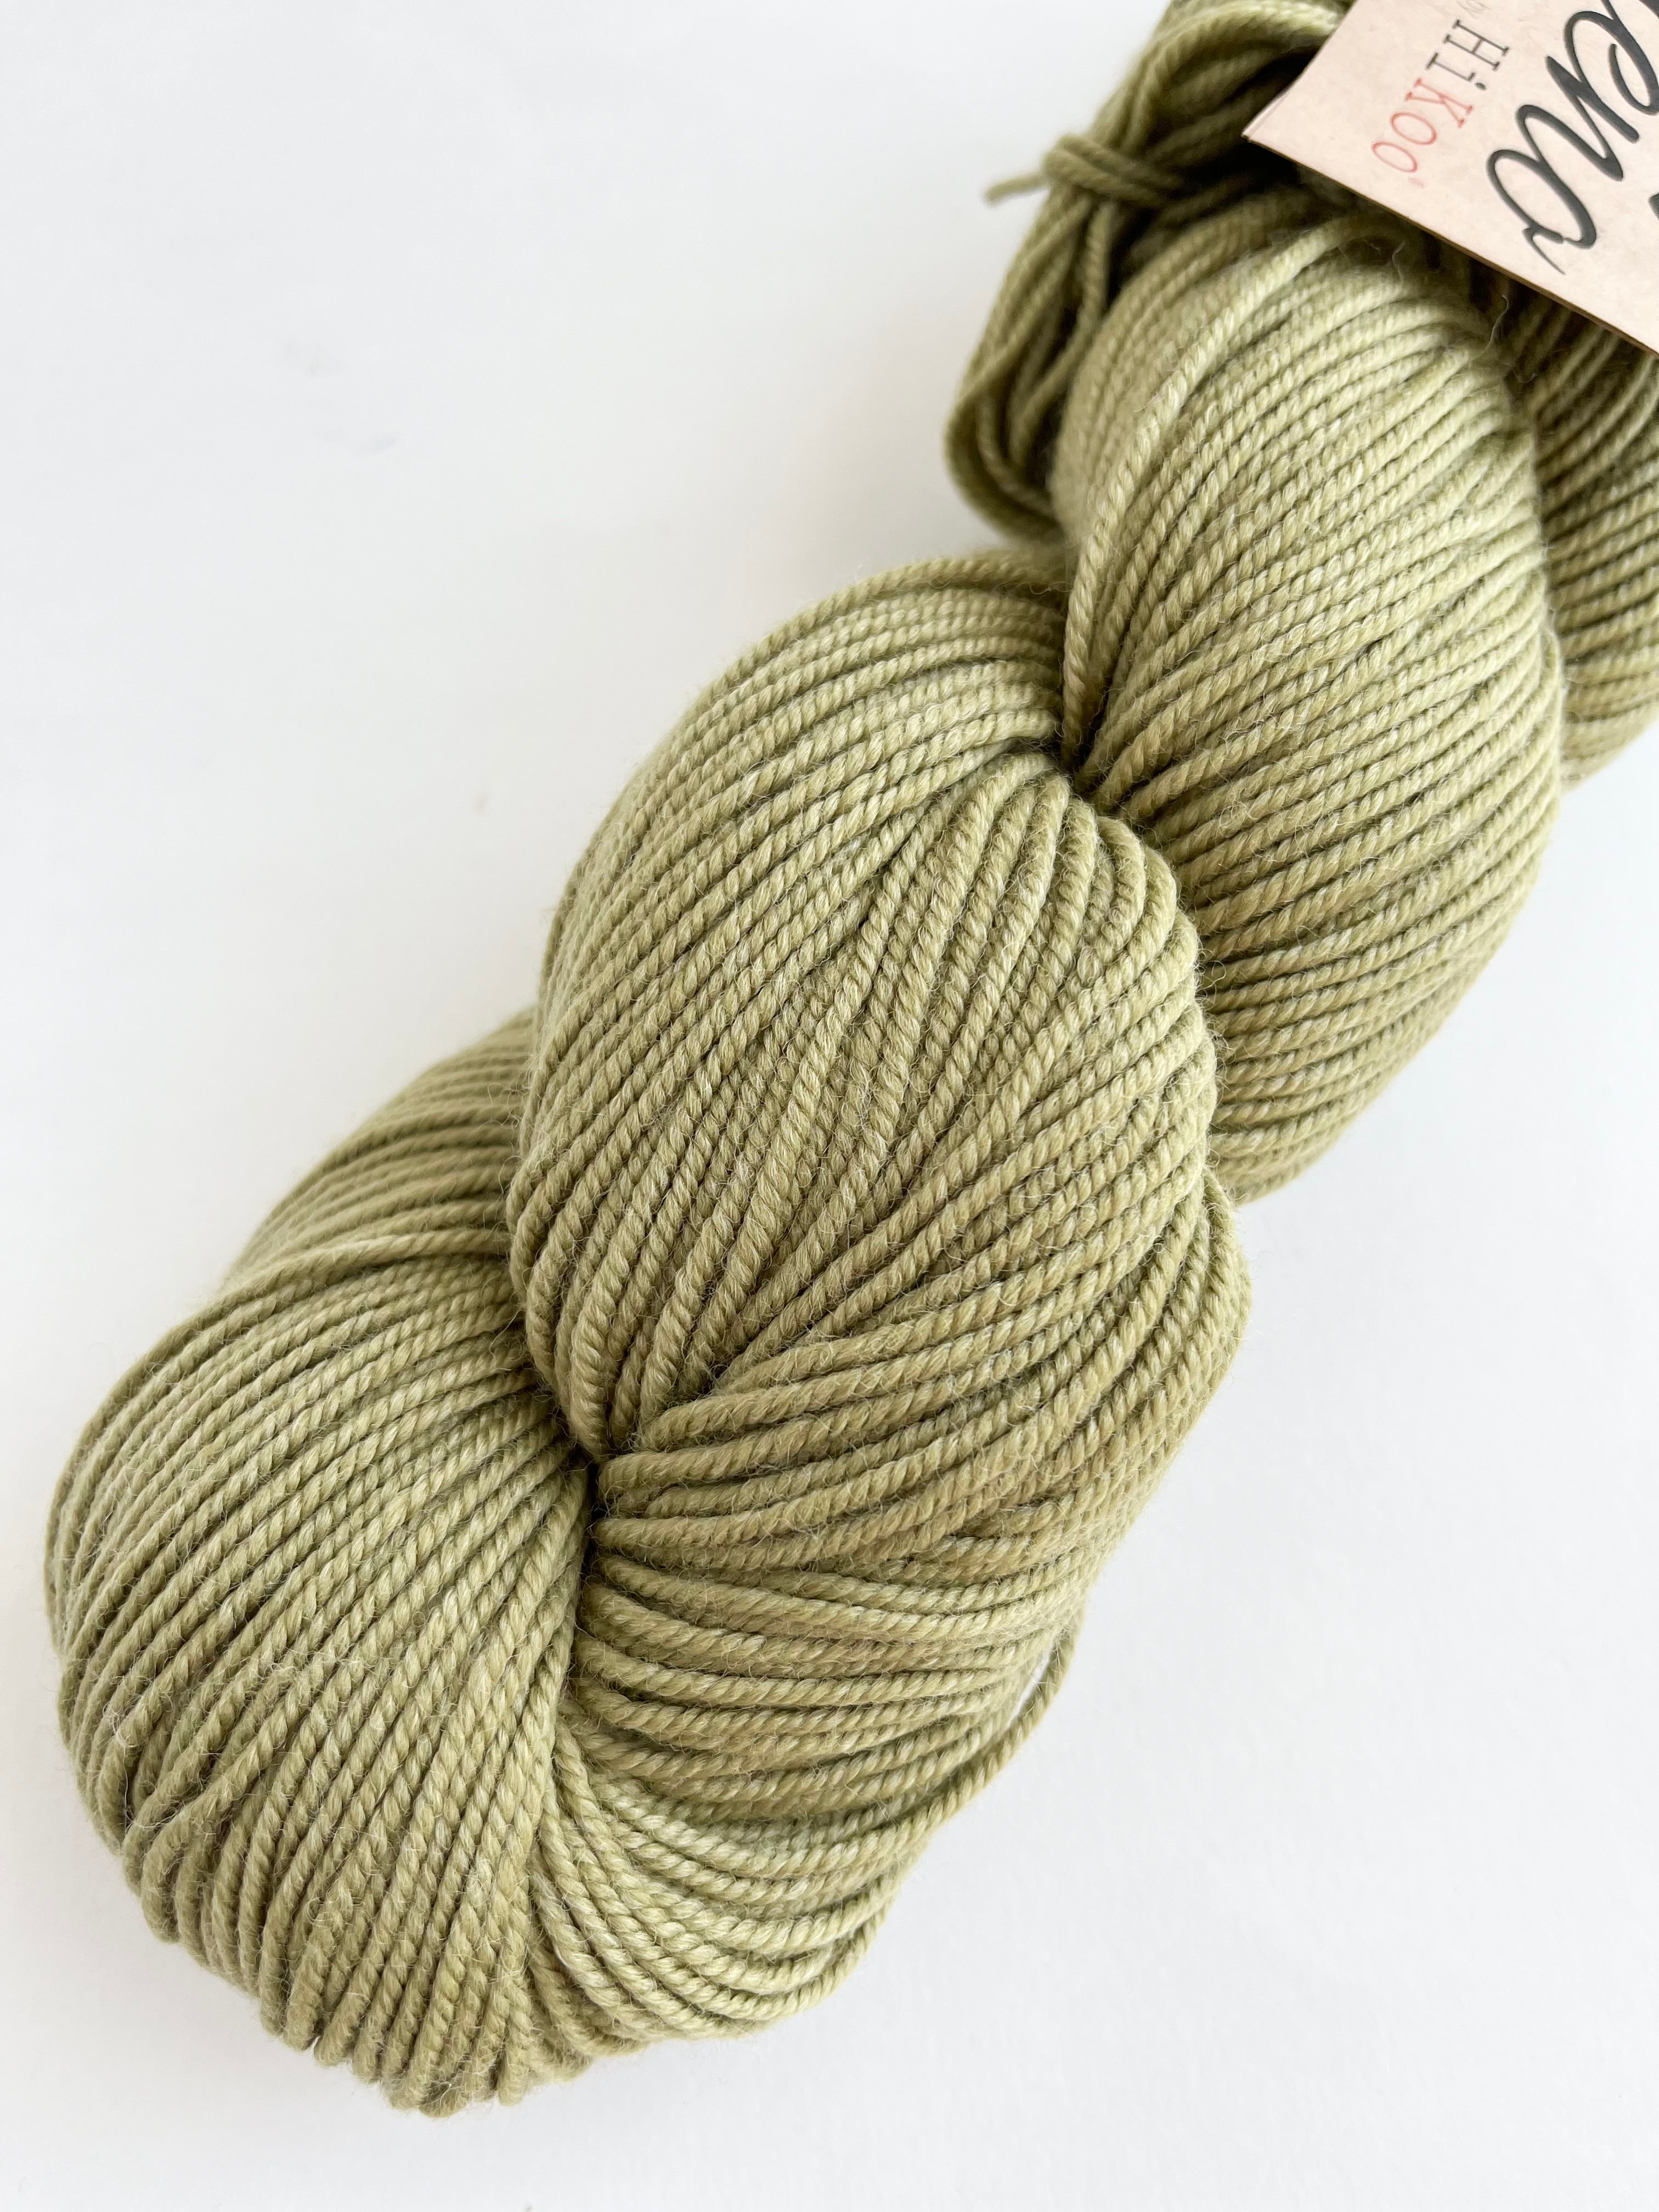 Sage - Sueño yarn from HiKoo